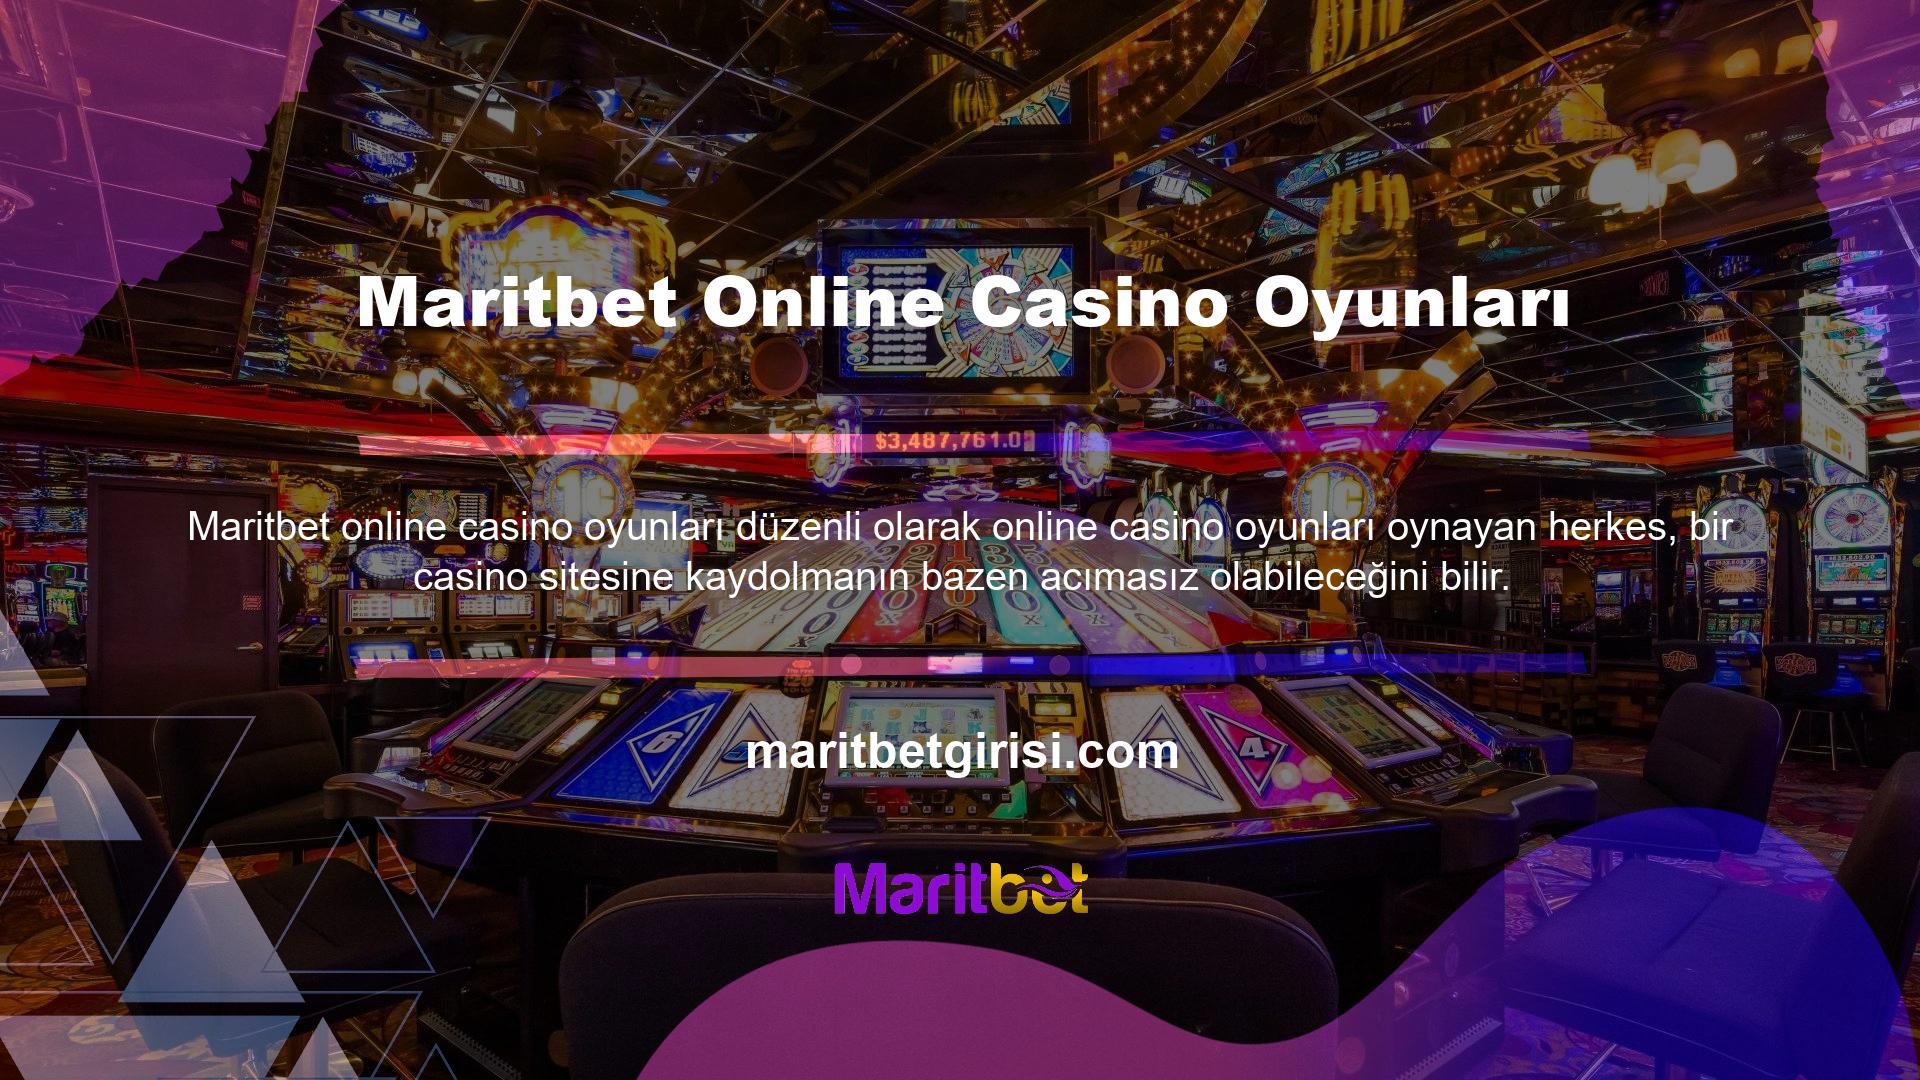 Çeşitli belgeler, anne kızlık soyadı, olası üyelik vs, batmak isteyen casino siteleri sonunda başarısız oluyor ama Maritbet gibi basit form ekranlarına sahip firmalar üyelik garantisi verebiliyor